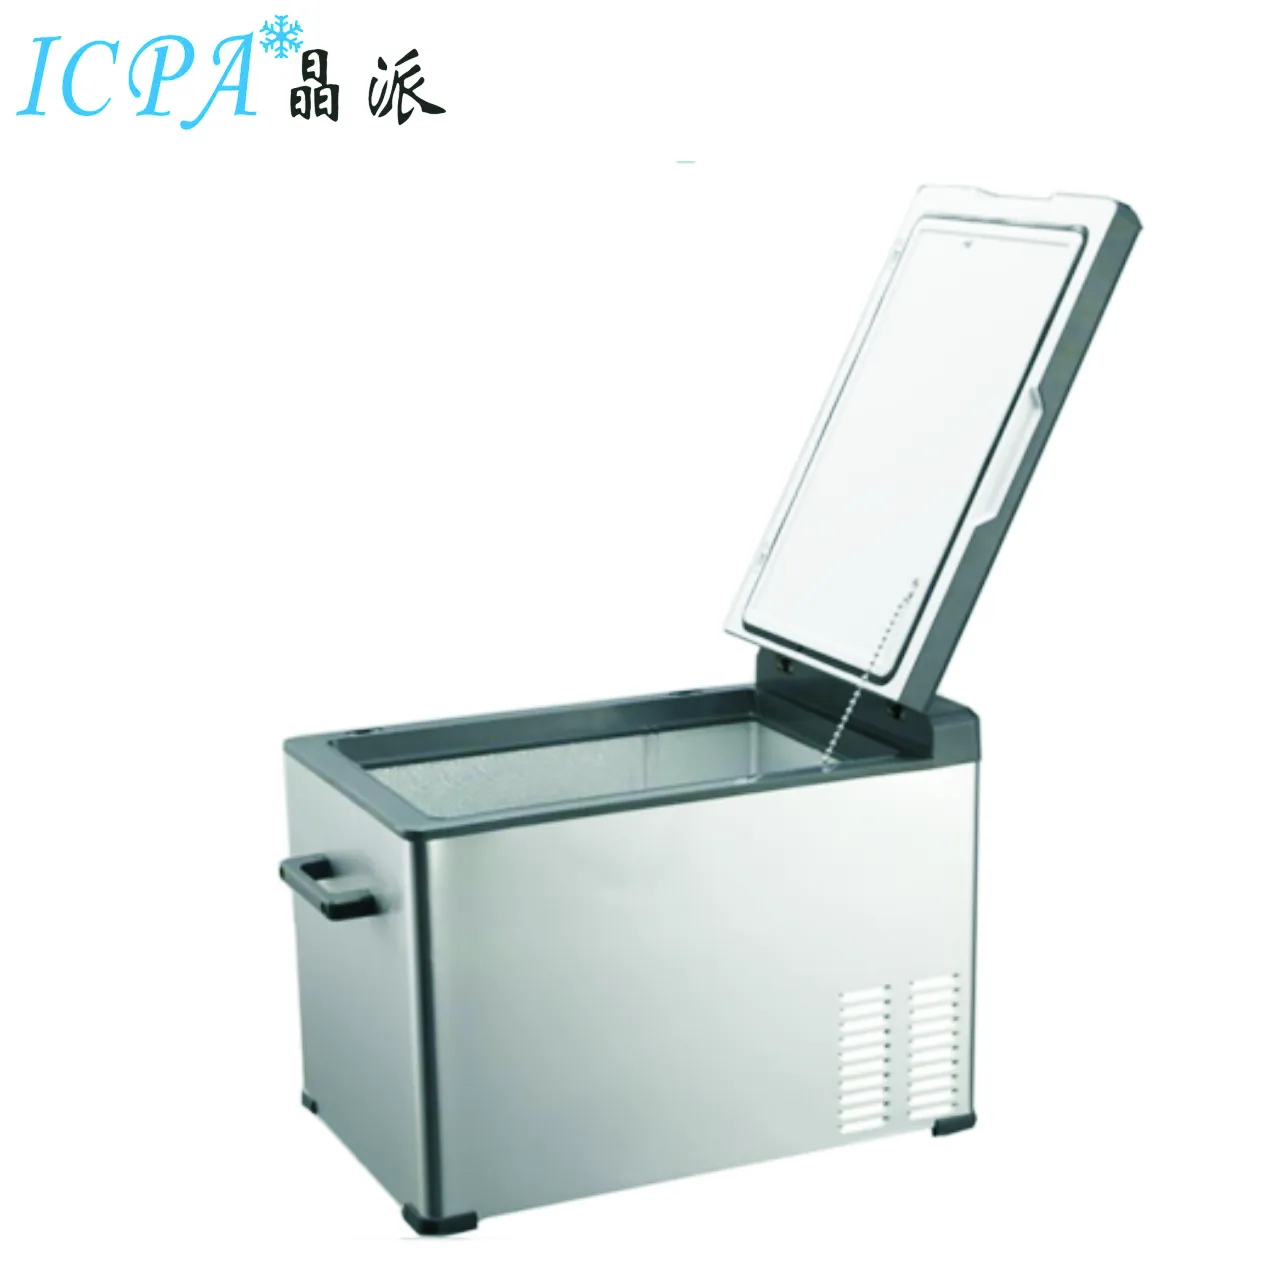 2019-2020 venda quente bc/D-30 DC12-24V compressor carro frigorífico geladeira congelador